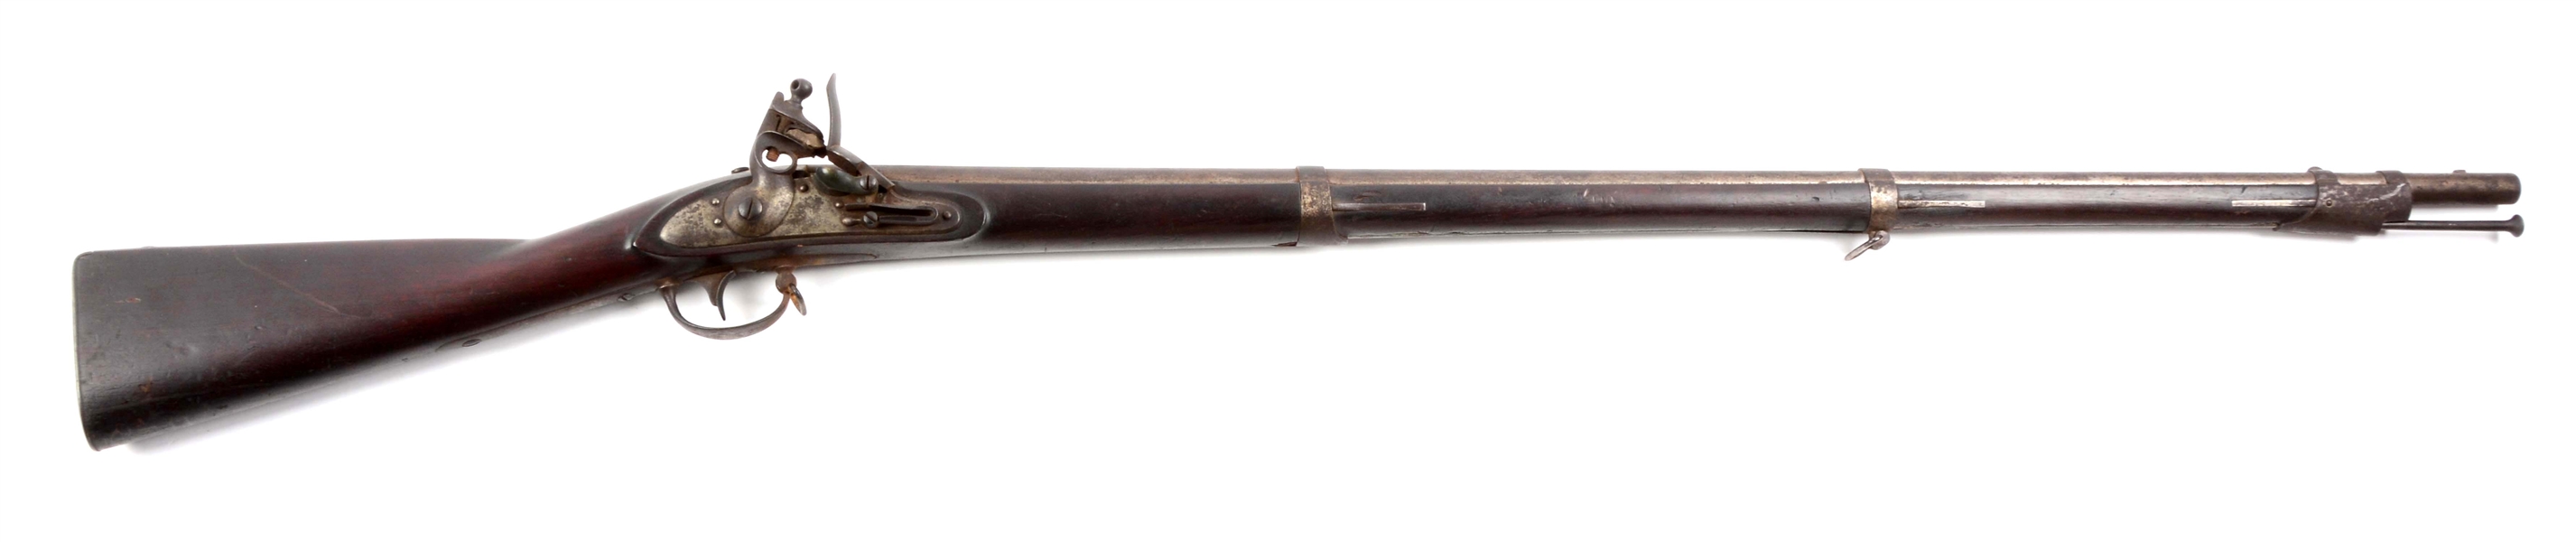 U.S. MODEL 1816 TYPE II FLINTLOCK MUSKET BY WICKHAM.